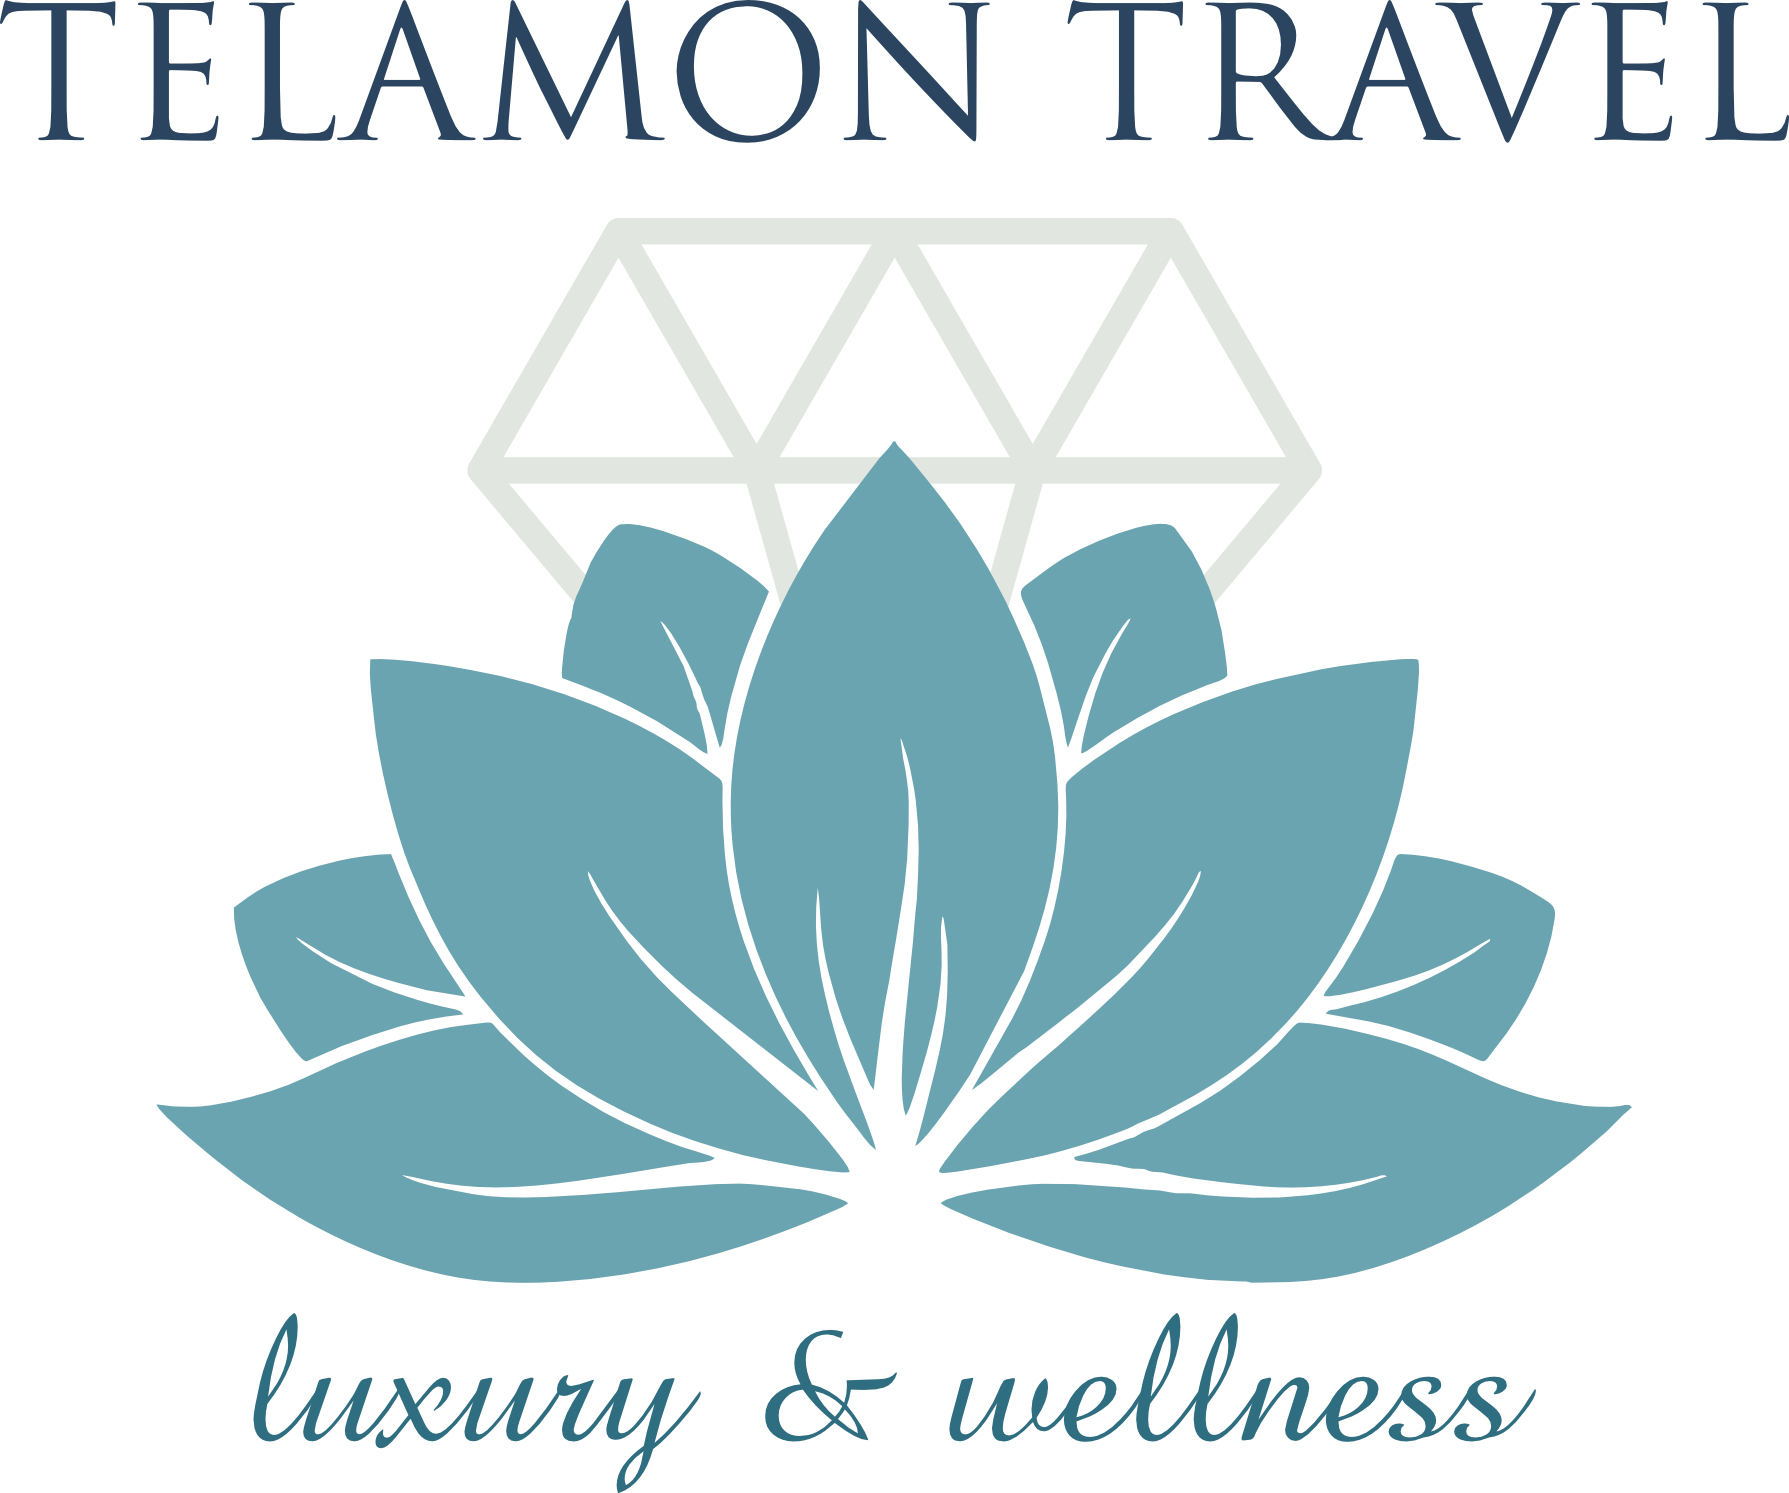 Telamon Travel - full logo